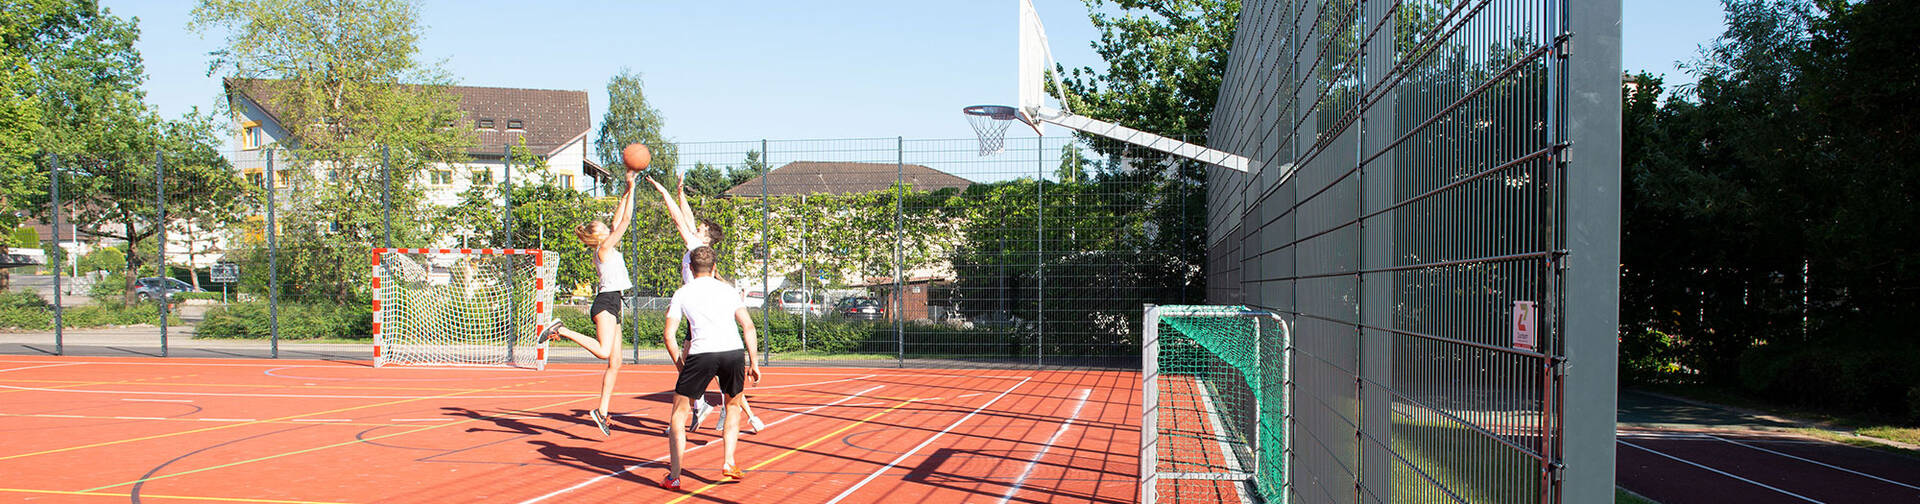 Ballfangnetze  sind im Sportbereich enorm wichtig. Sicherheit gewährleisten oder Abgrenzungen erstellen sind aktuelle Themen - auch auf Schulplätzen.  | © Zaunteam